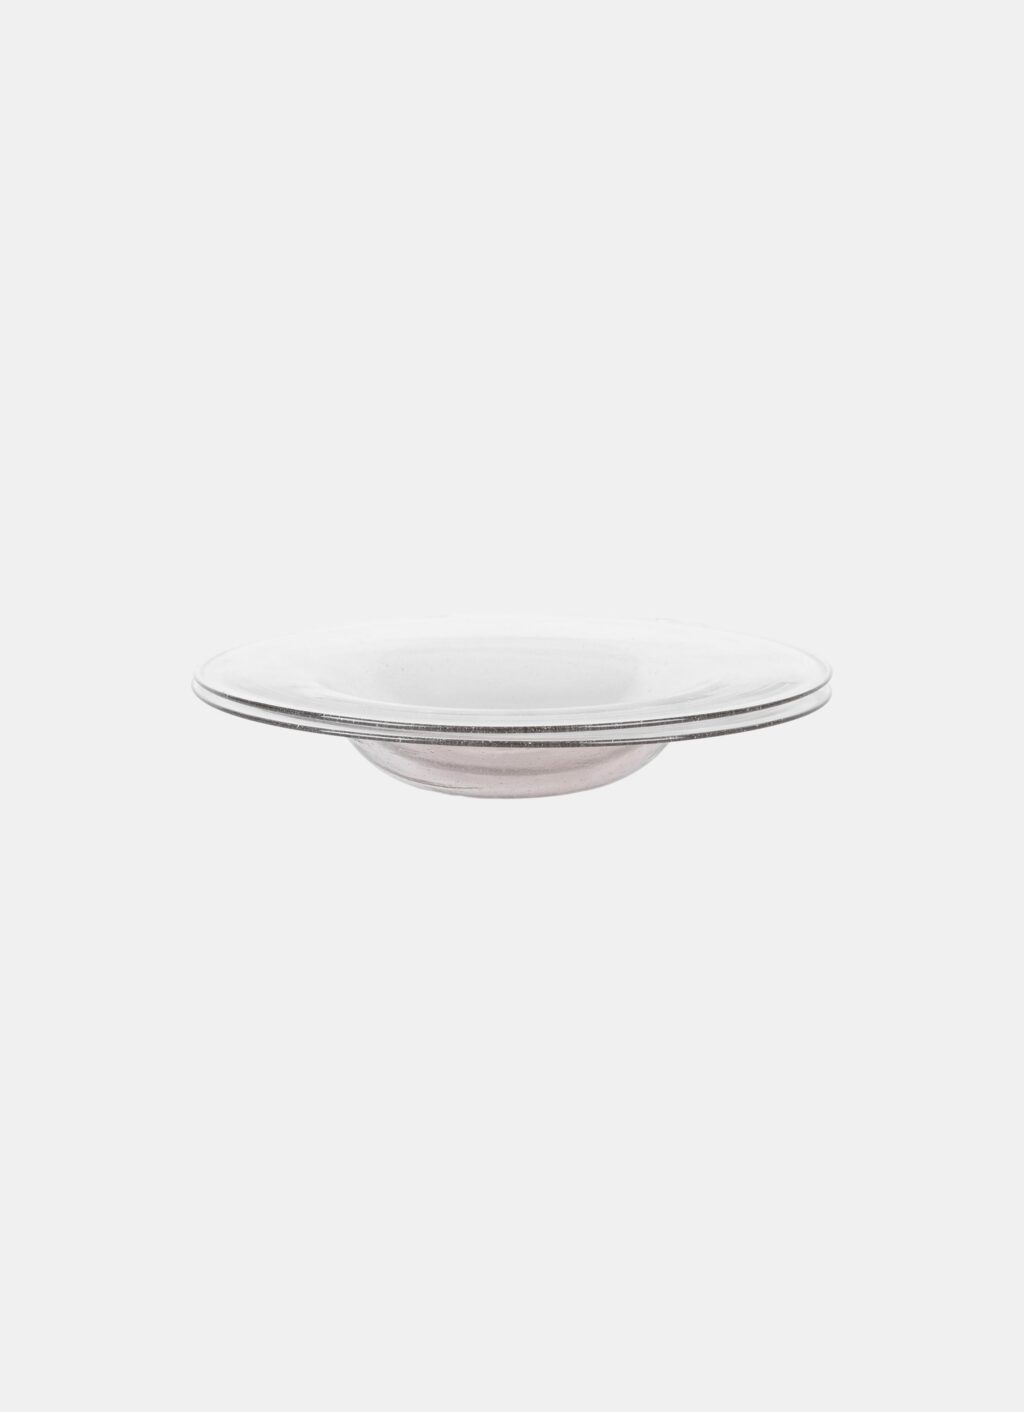 Frama - Isle Glass - Shallow Bowl Set of Two - Light Smoke